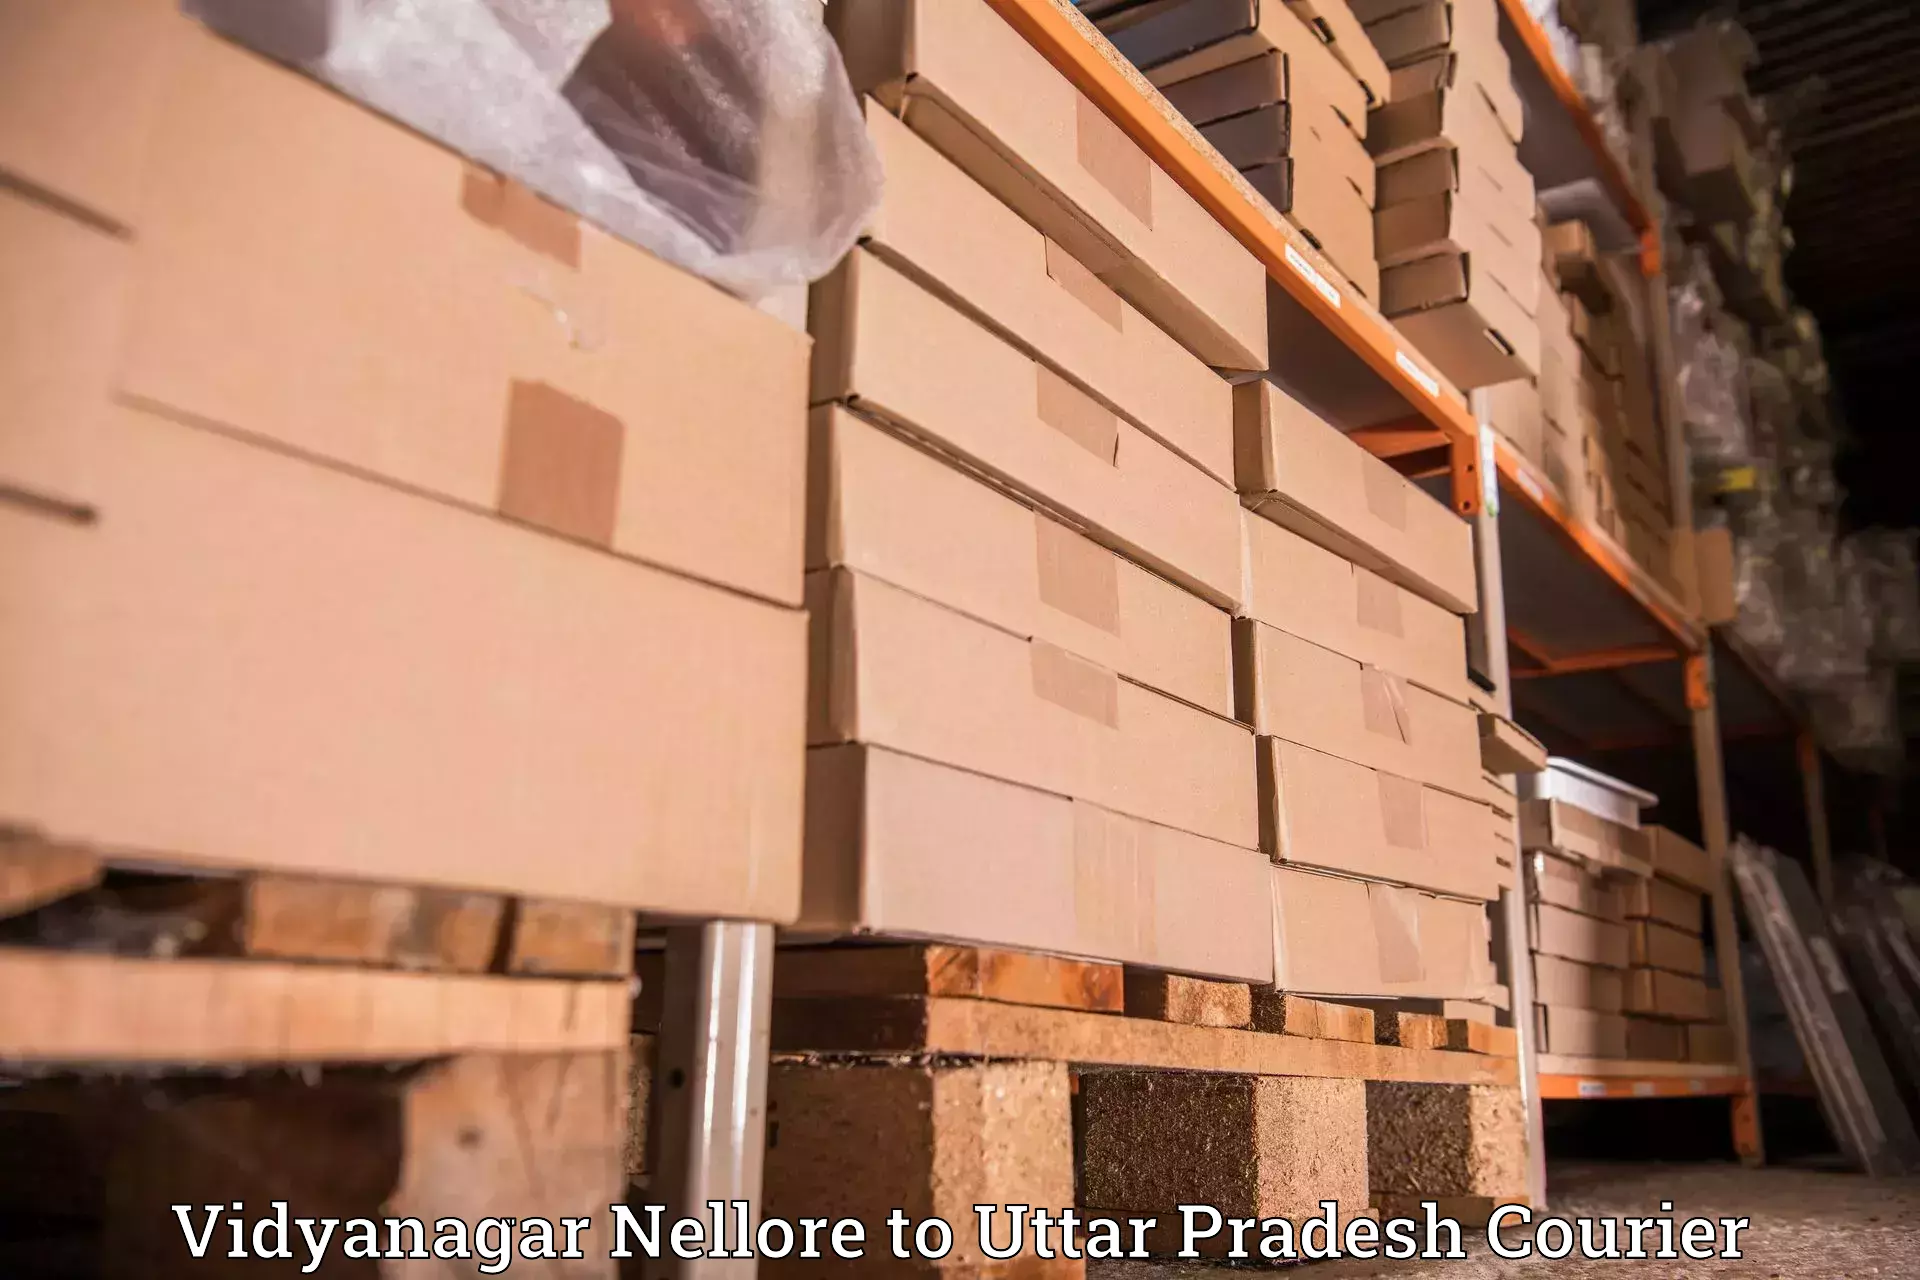 Courier service innovation Vidyanagar Nellore to Rudauli